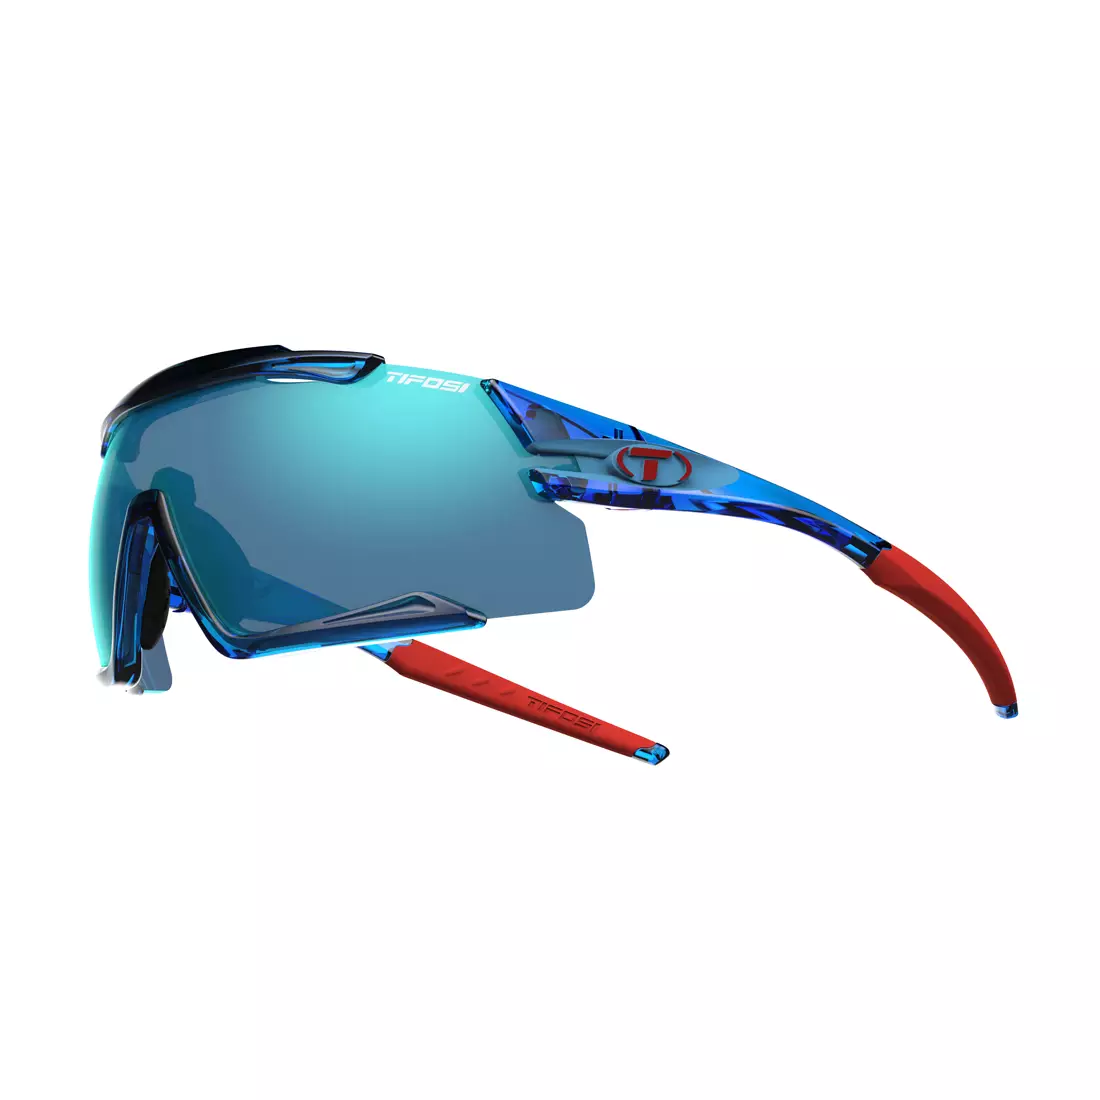 TIFOSI Sportbrillen mit austauschbaren Gläsern aethon clarion crystal blue (Clarion Blue, AC Red, Clear) TFI-1580106122